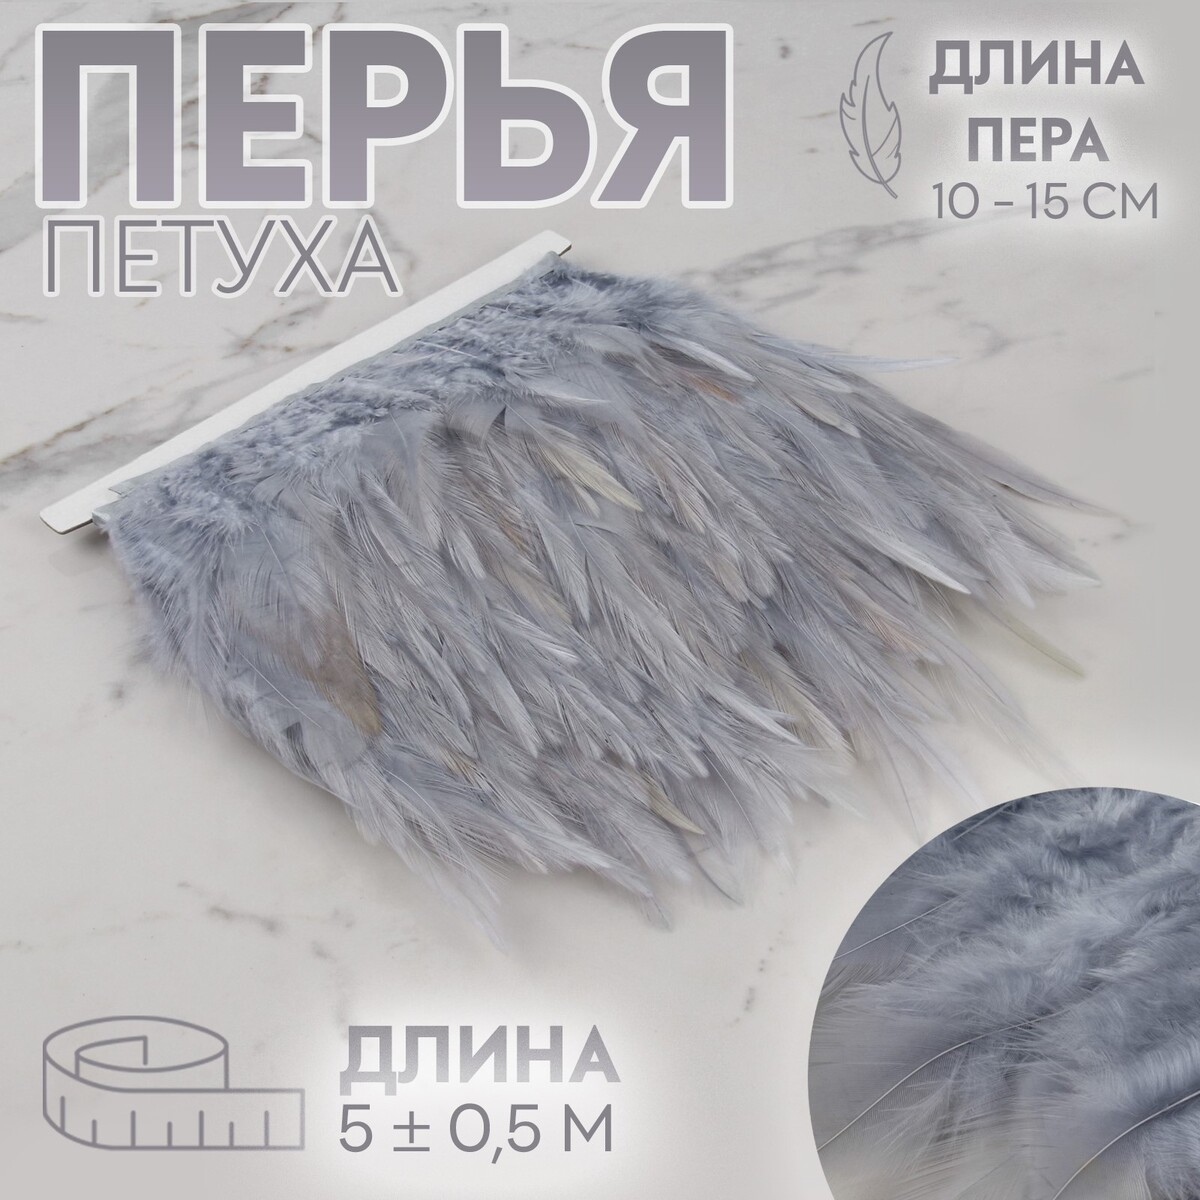 Тесьма с перьями петуха, 10-15 см, 5 ± 0,5 м, цвет серый тесьма с перьями индюка 13 17 см 5 ± 0 5 м изумрудный